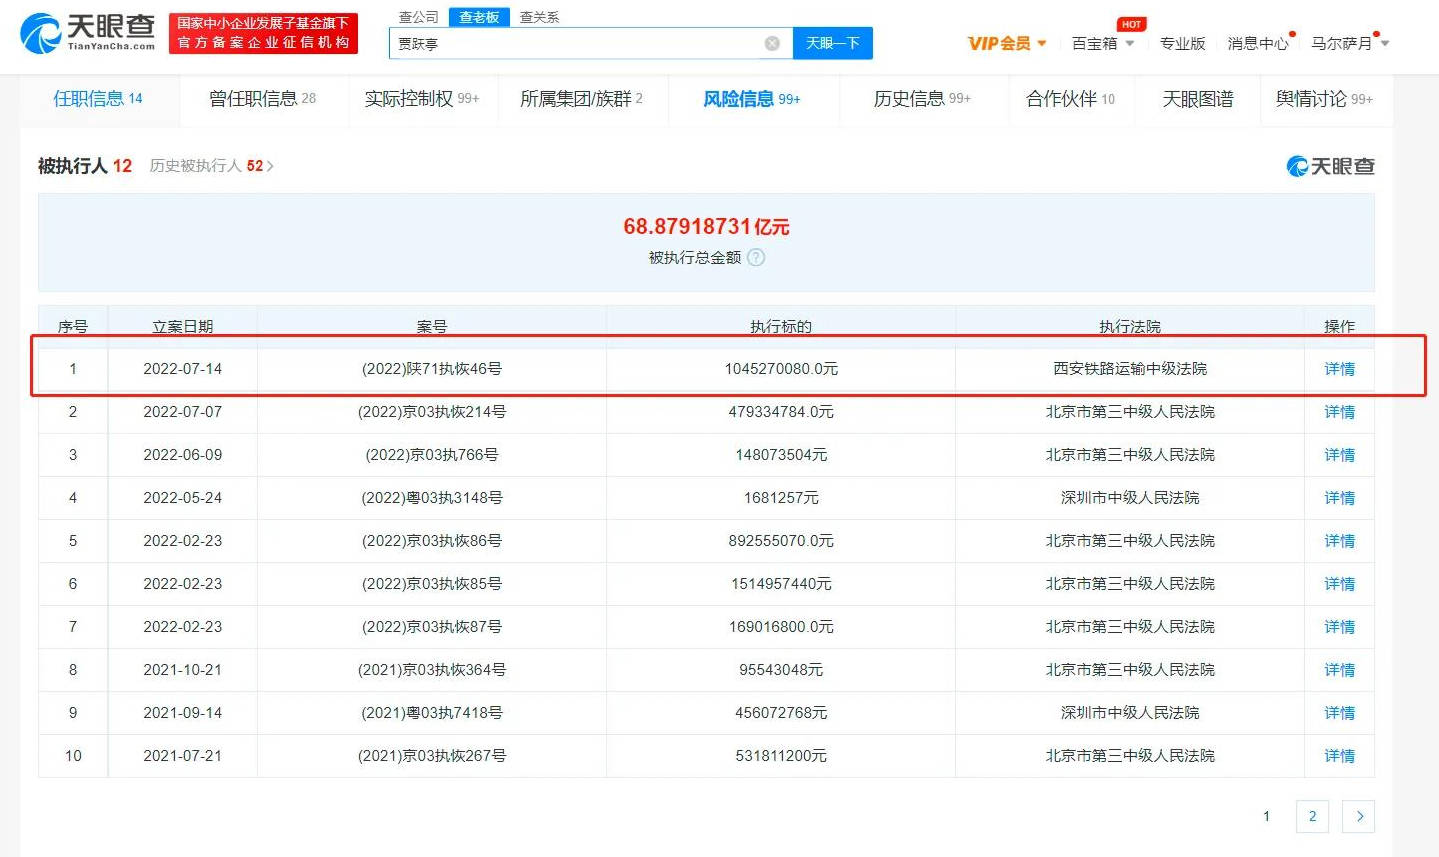 贾跃亭新增恢复执行超10亿 累计被执行金额超68亿